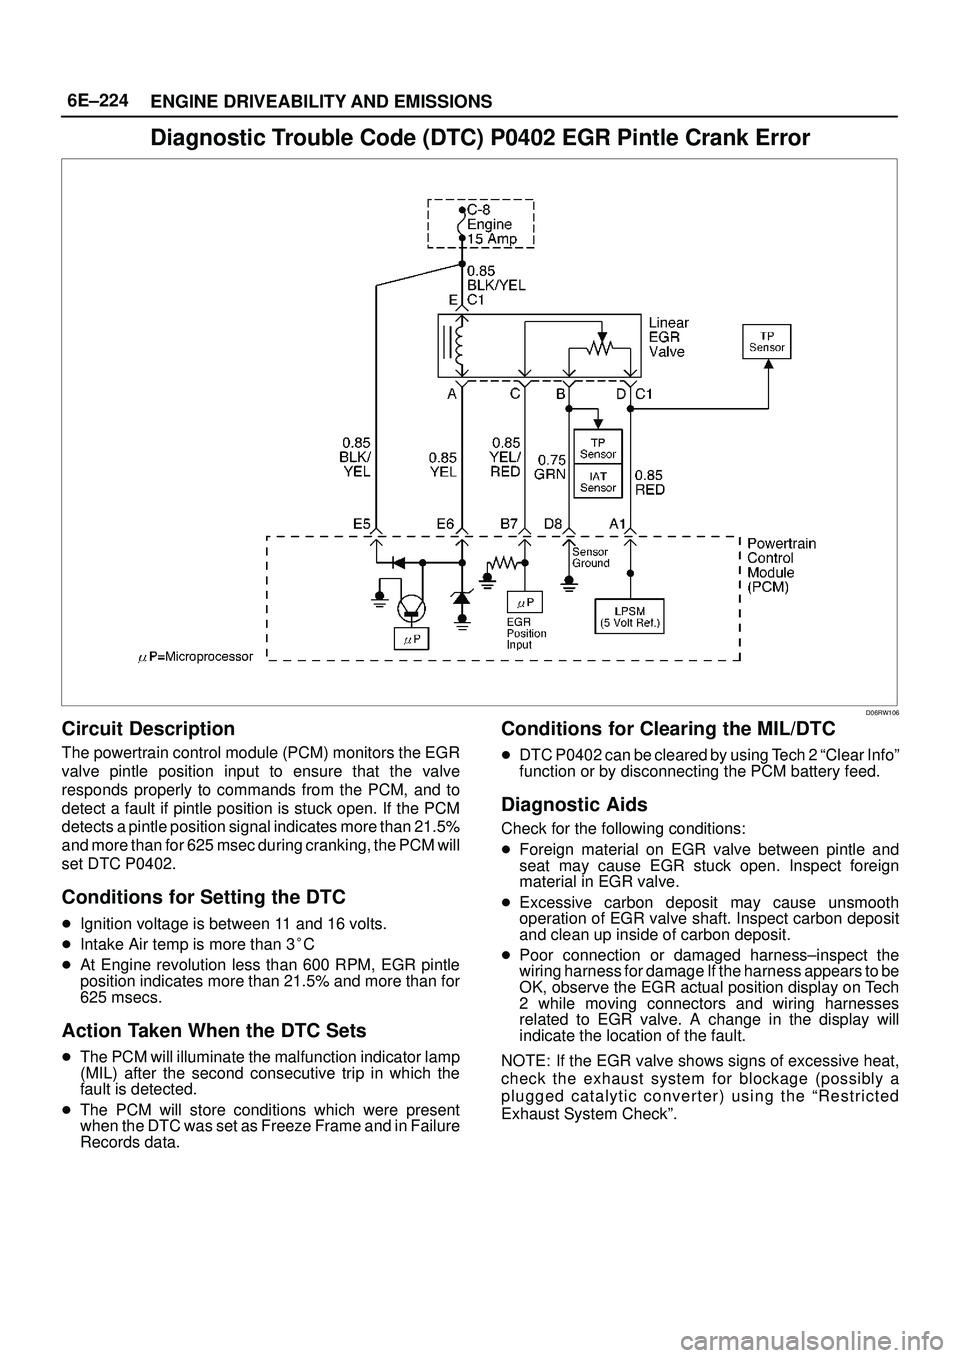 ISUZU TROOPER 1998  Service Repair Manual 6E±224
ENGINE DRIVEABILITY AND EMISSIONS
Diagnostic Trouble Code (DTC) P0402 EGR Pintle Crank Error
D06RW106
Circuit Description
The powertrain control module (PCM) monitors the EGR
valve pintle posi